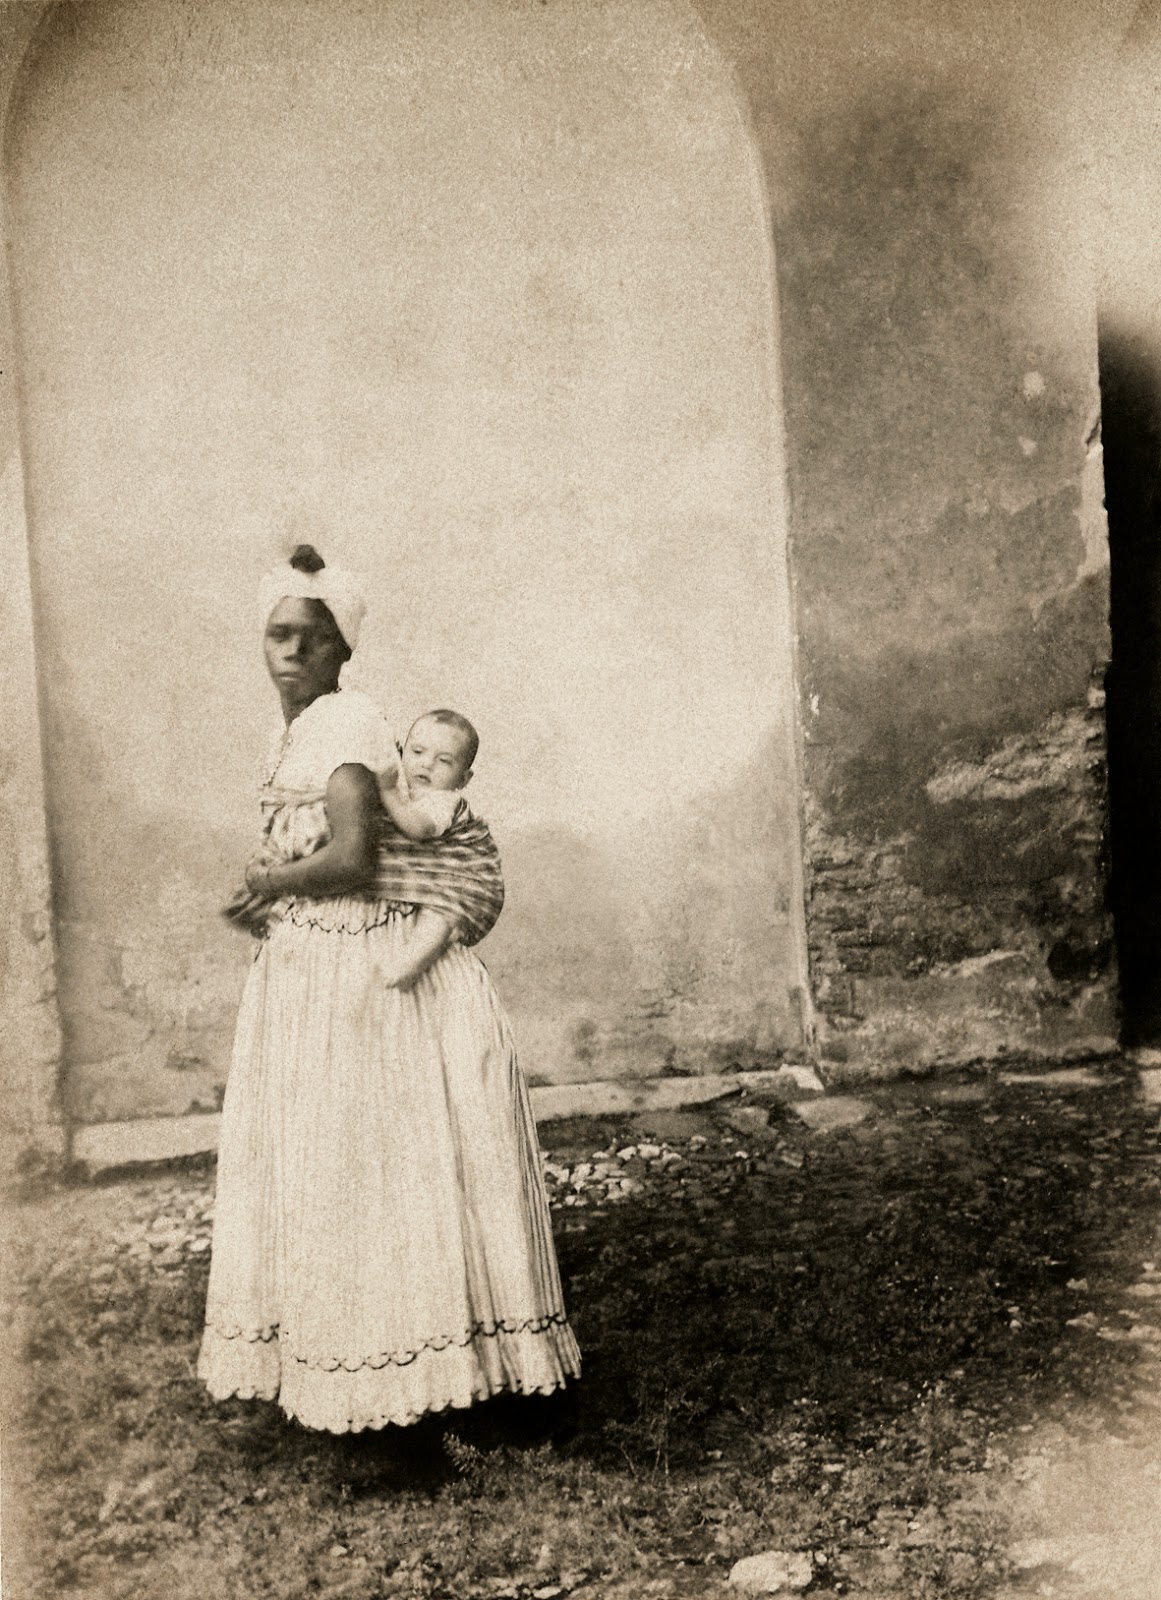 Negra com uma criança branca nas costas, Bahia, 1870. (Acervo Instituto Moreira Salles).